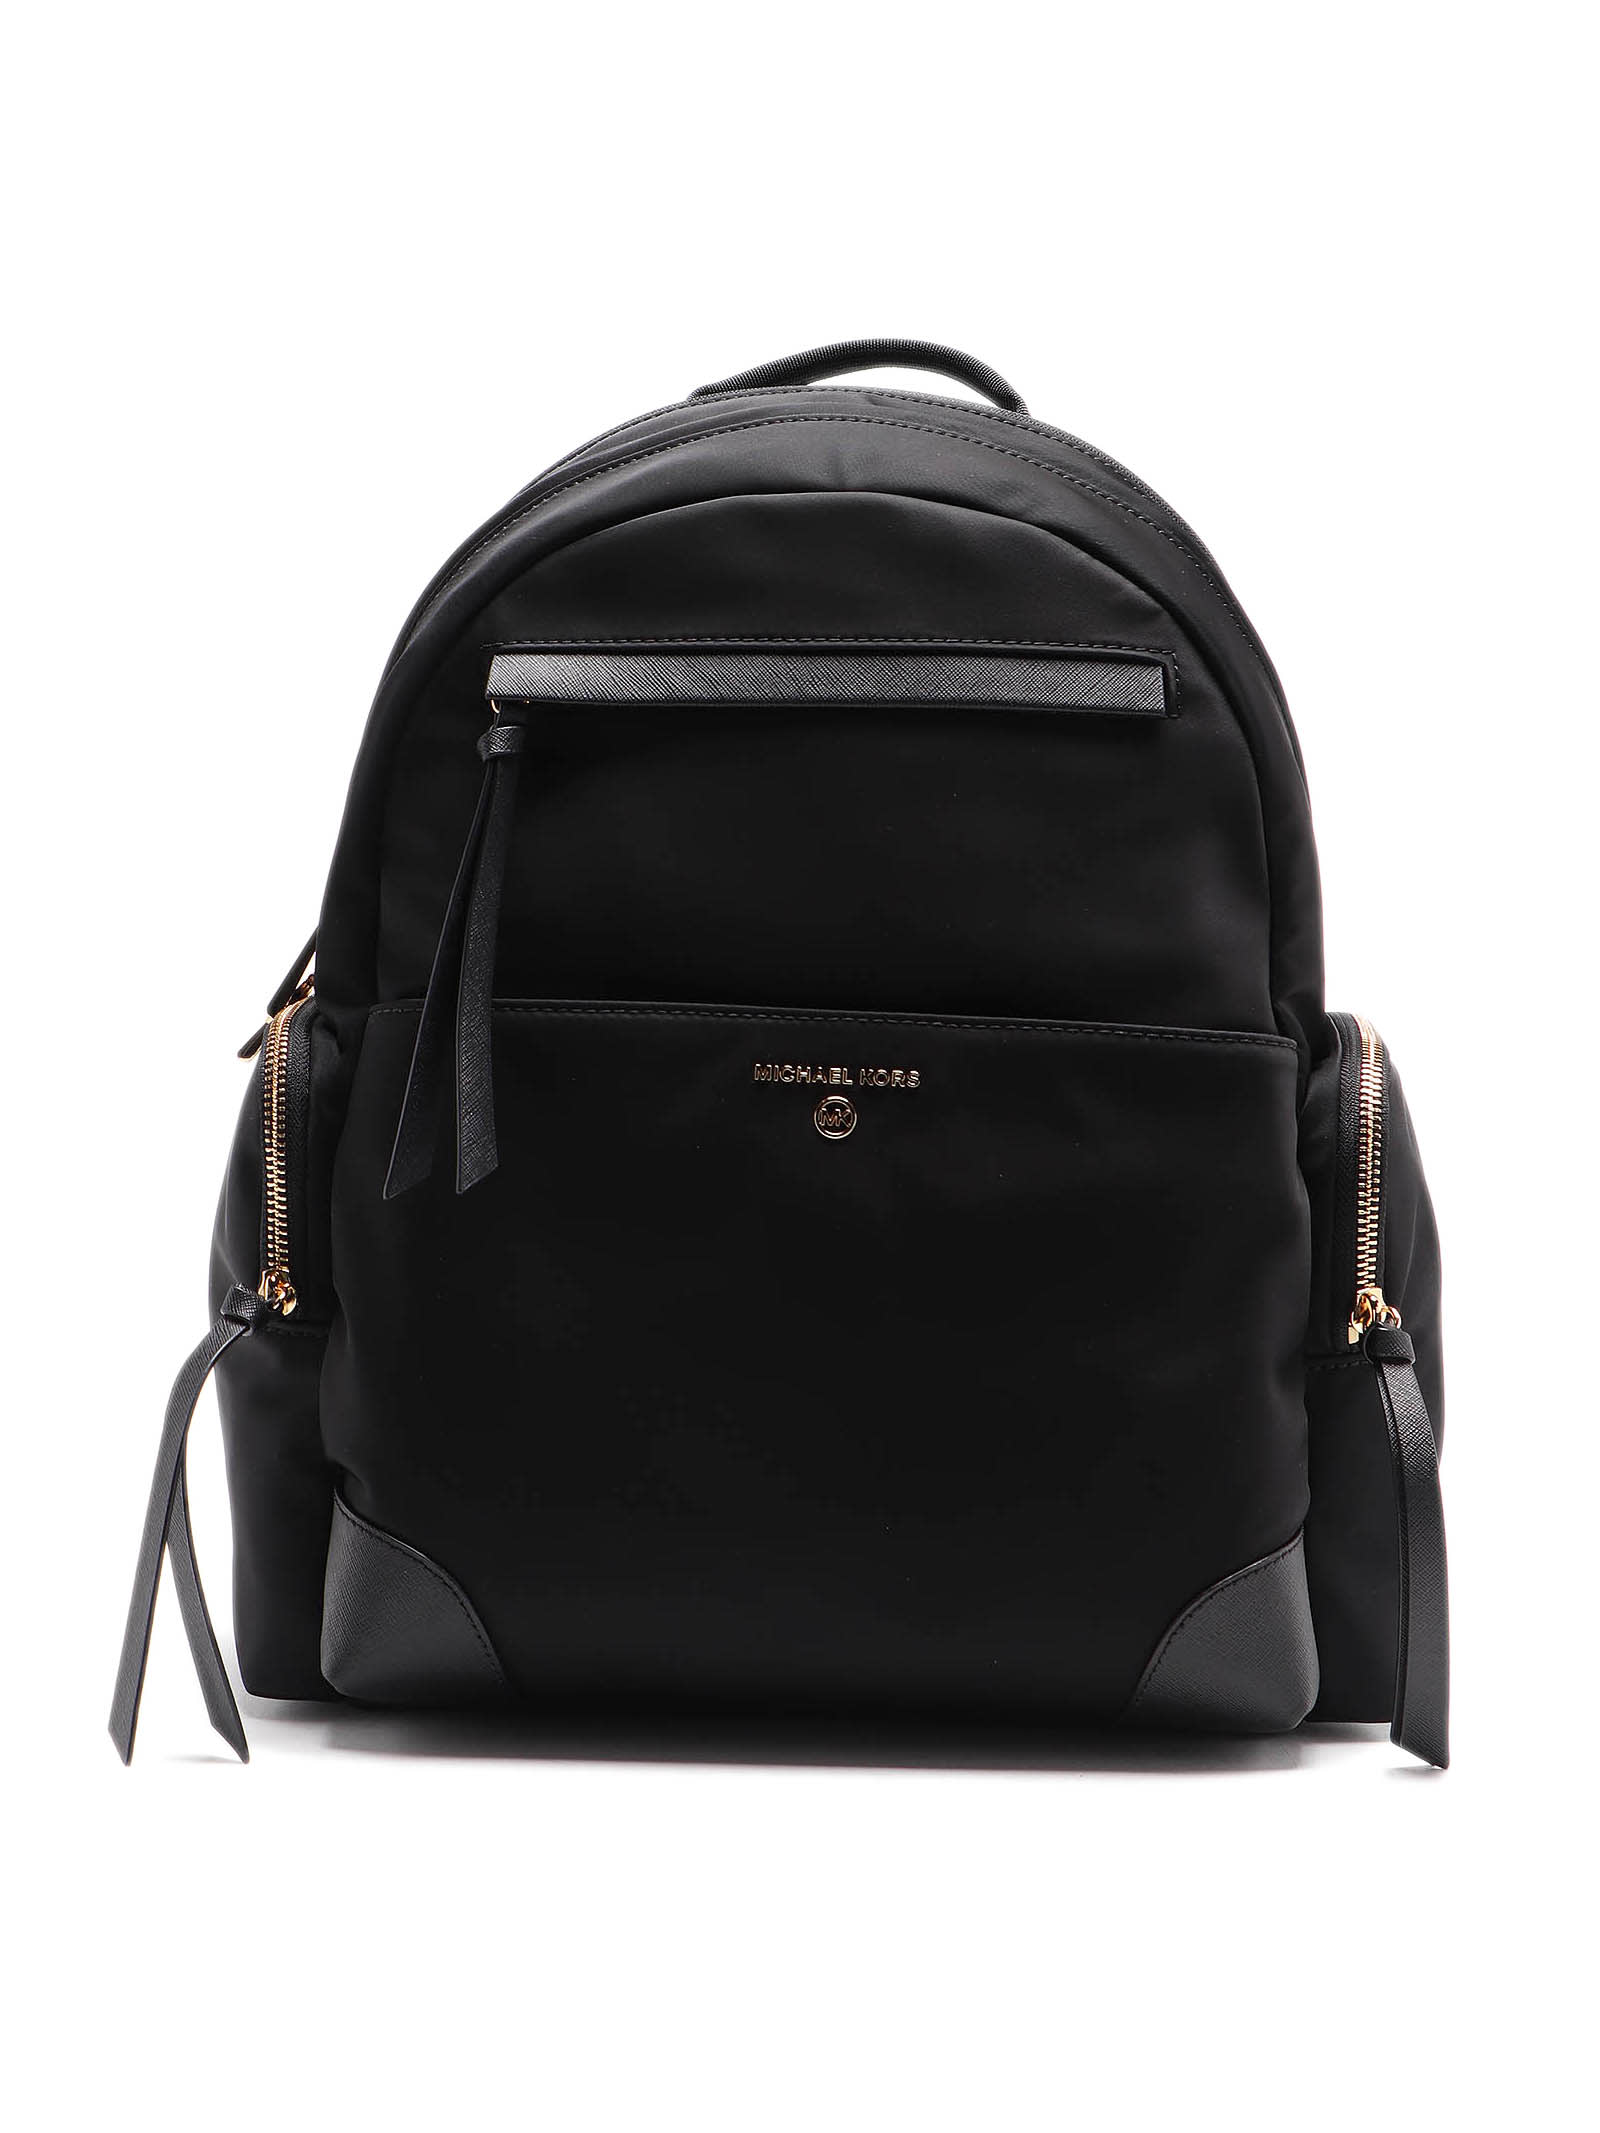 Michael Kors Prescott Lg Backpack In Black